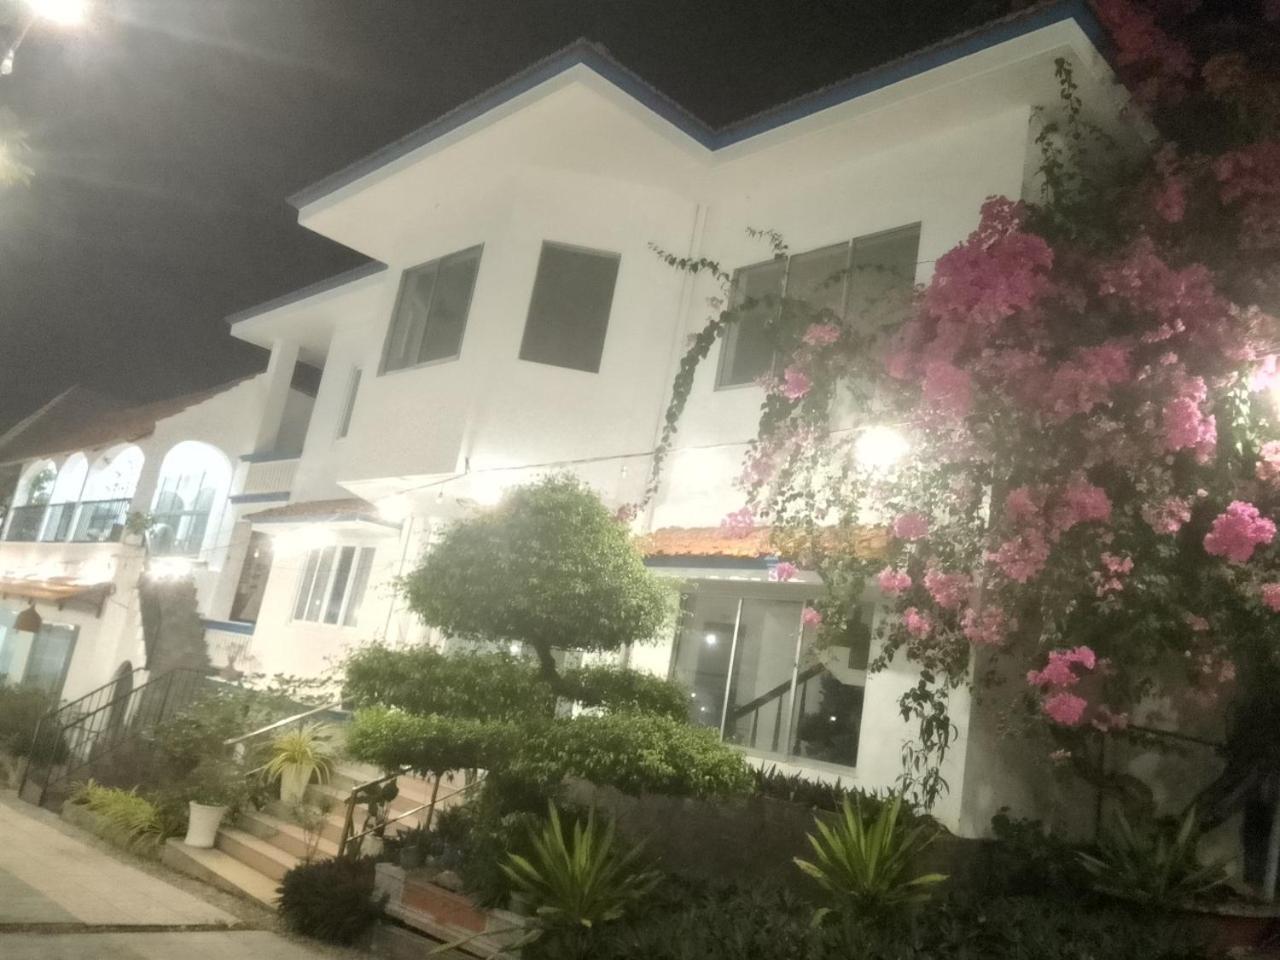 Vnd Hotel 10 Trần Phú Vũng Tàu Ngoại thất bức ảnh